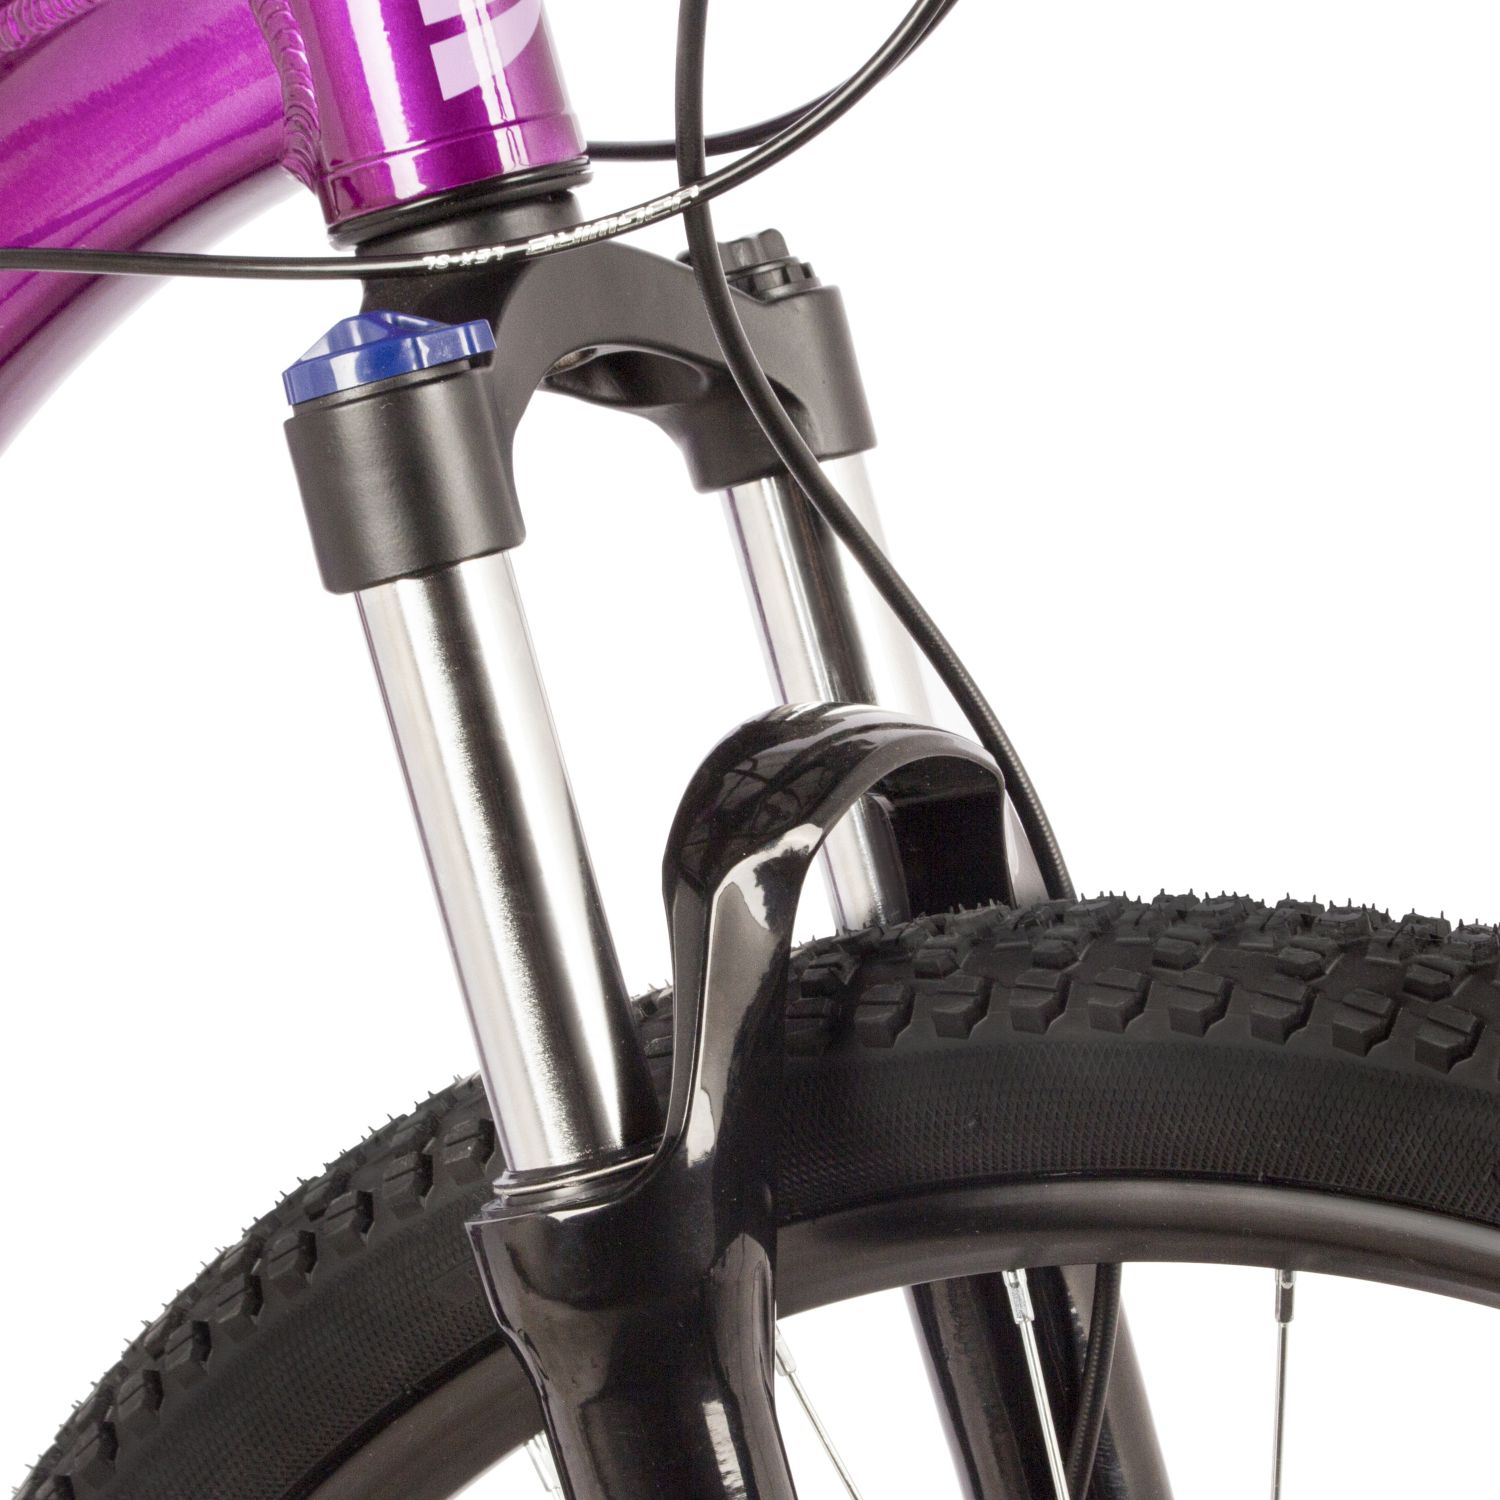 Женский велосипед Stinger Vega Evo 29, год 2021, цвет Оранжевый, ростовка 19